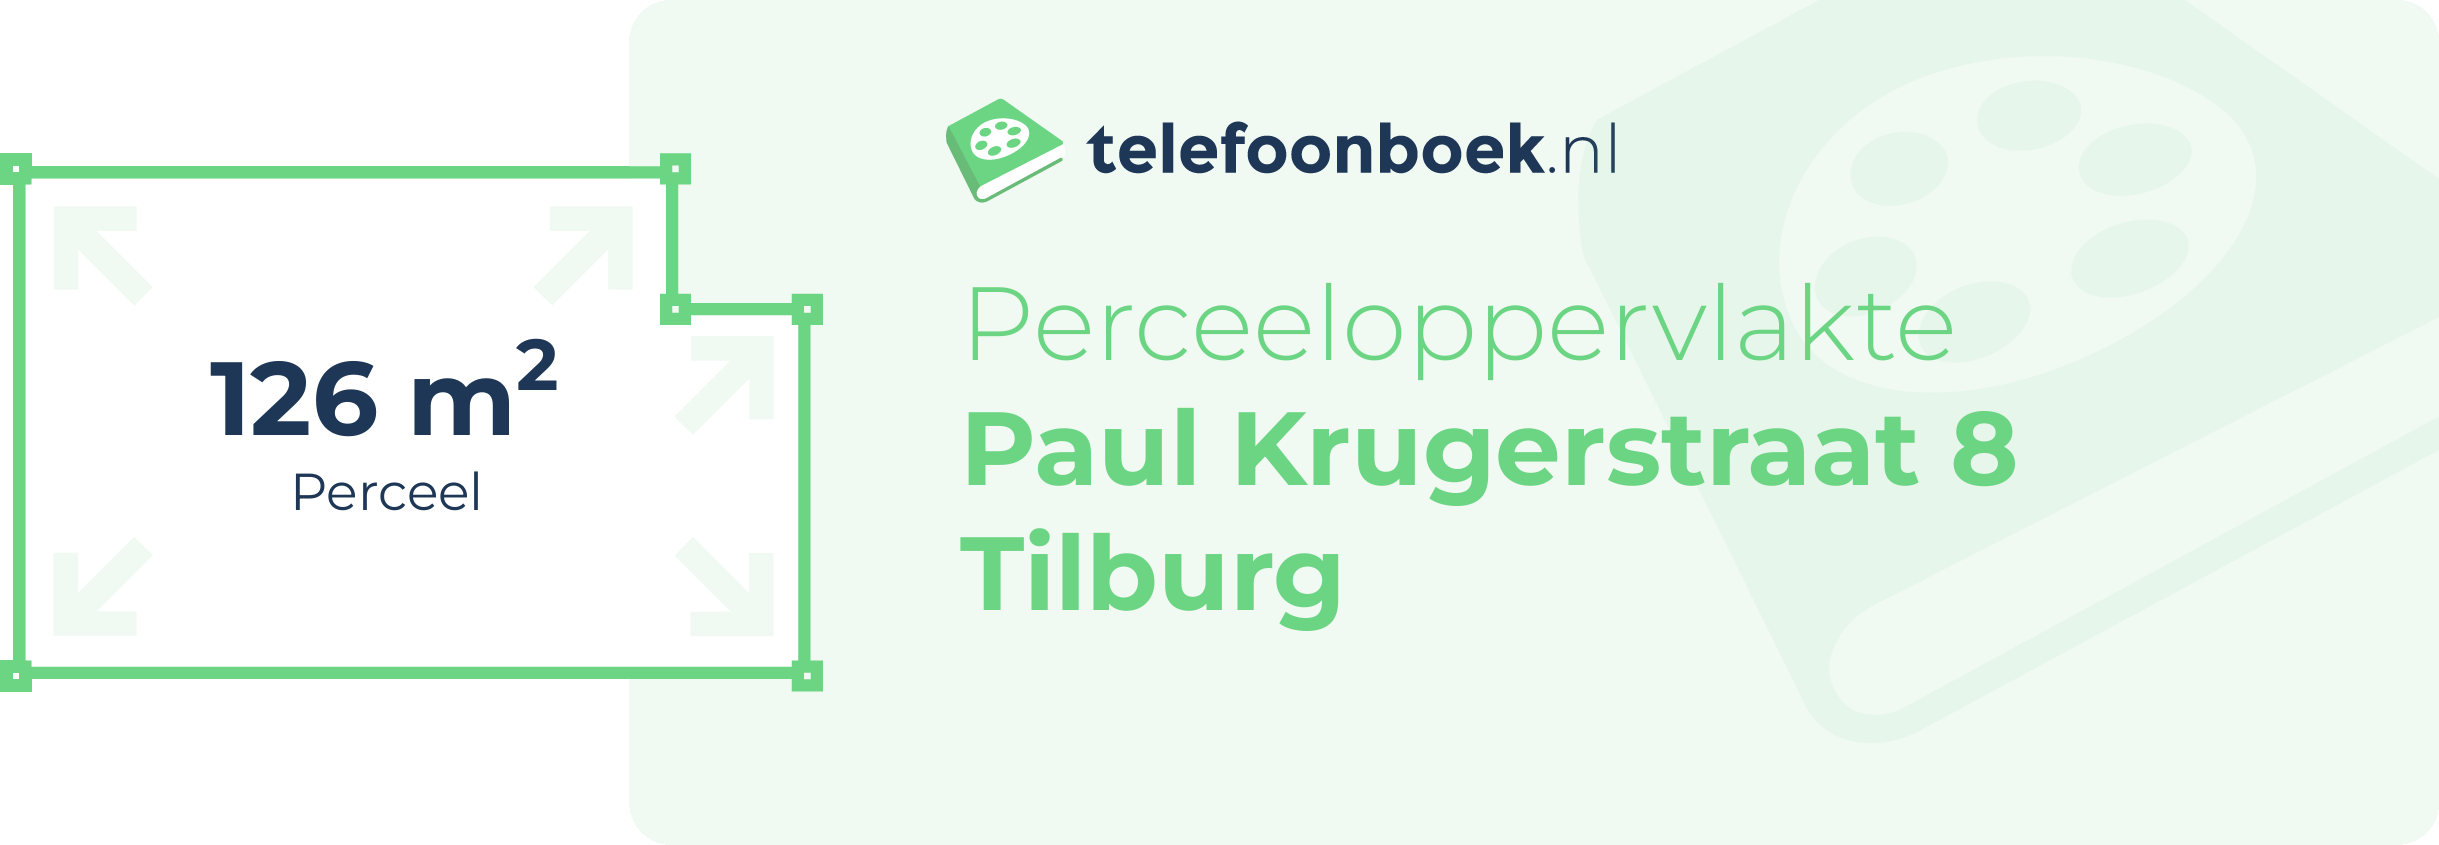 Perceeloppervlakte Paul Krugerstraat 8 Tilburg